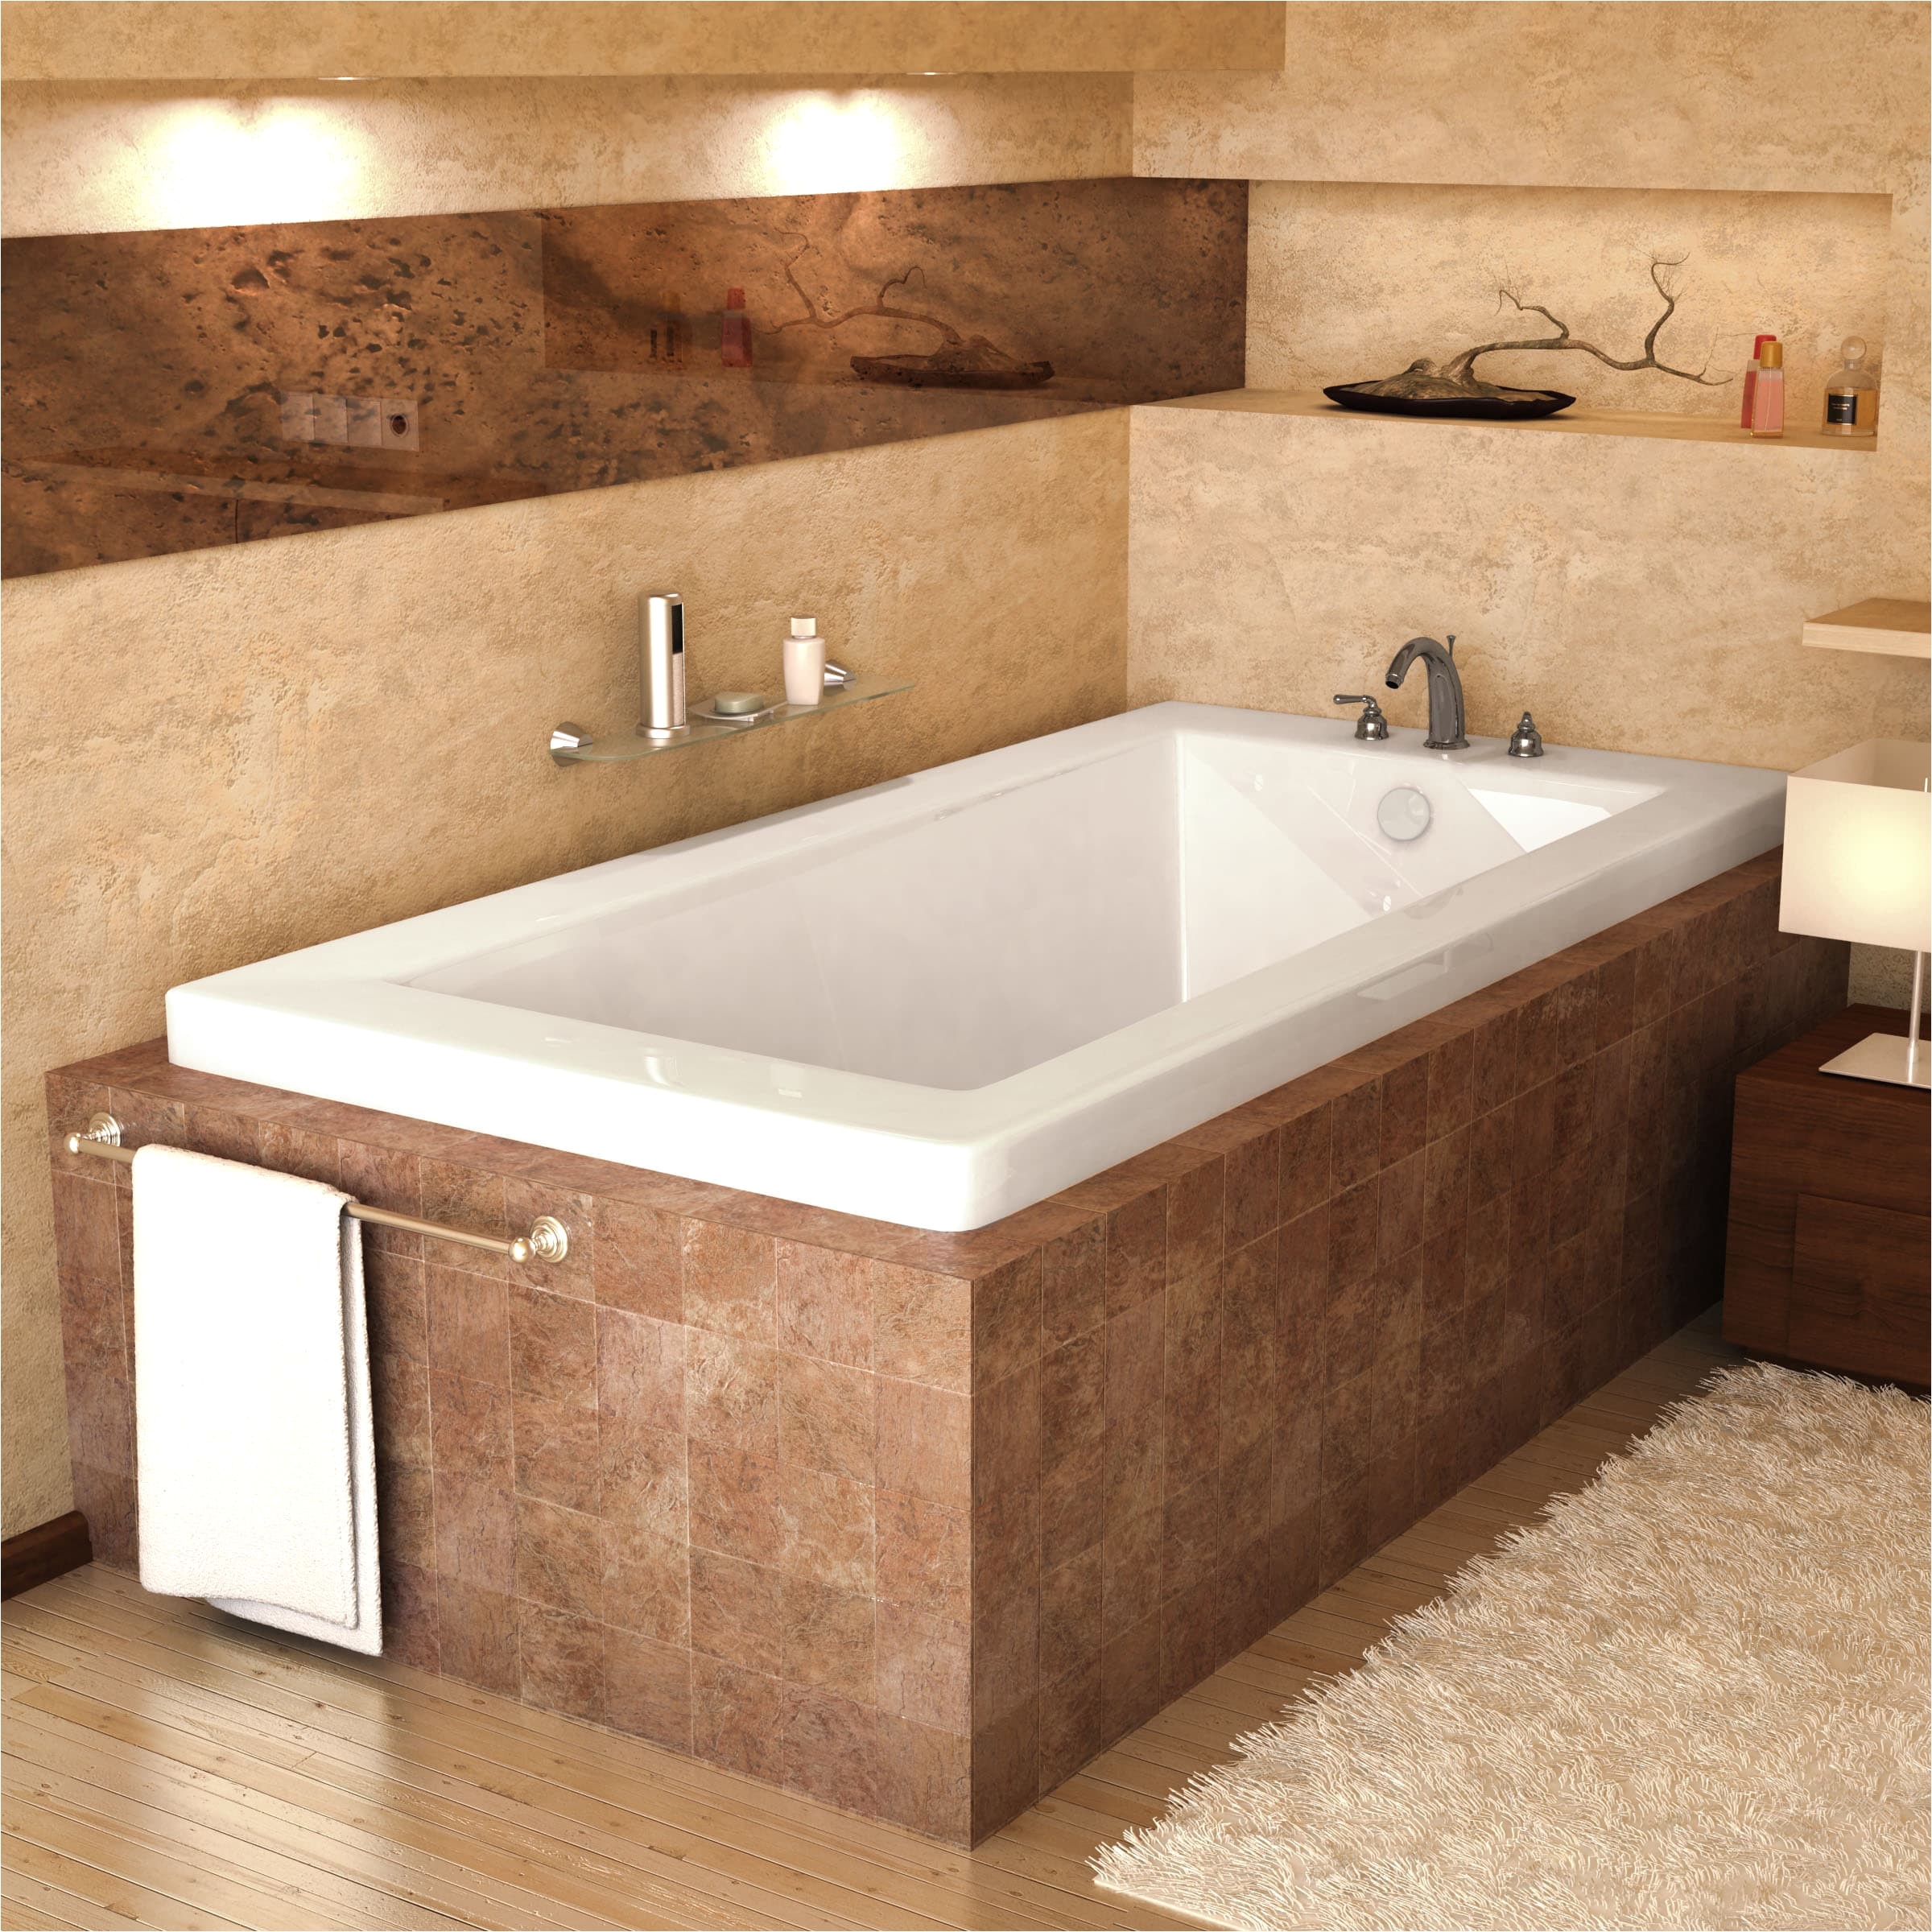 bathroom fabulius white acrylic 54x27 tub for modern bathroom decor